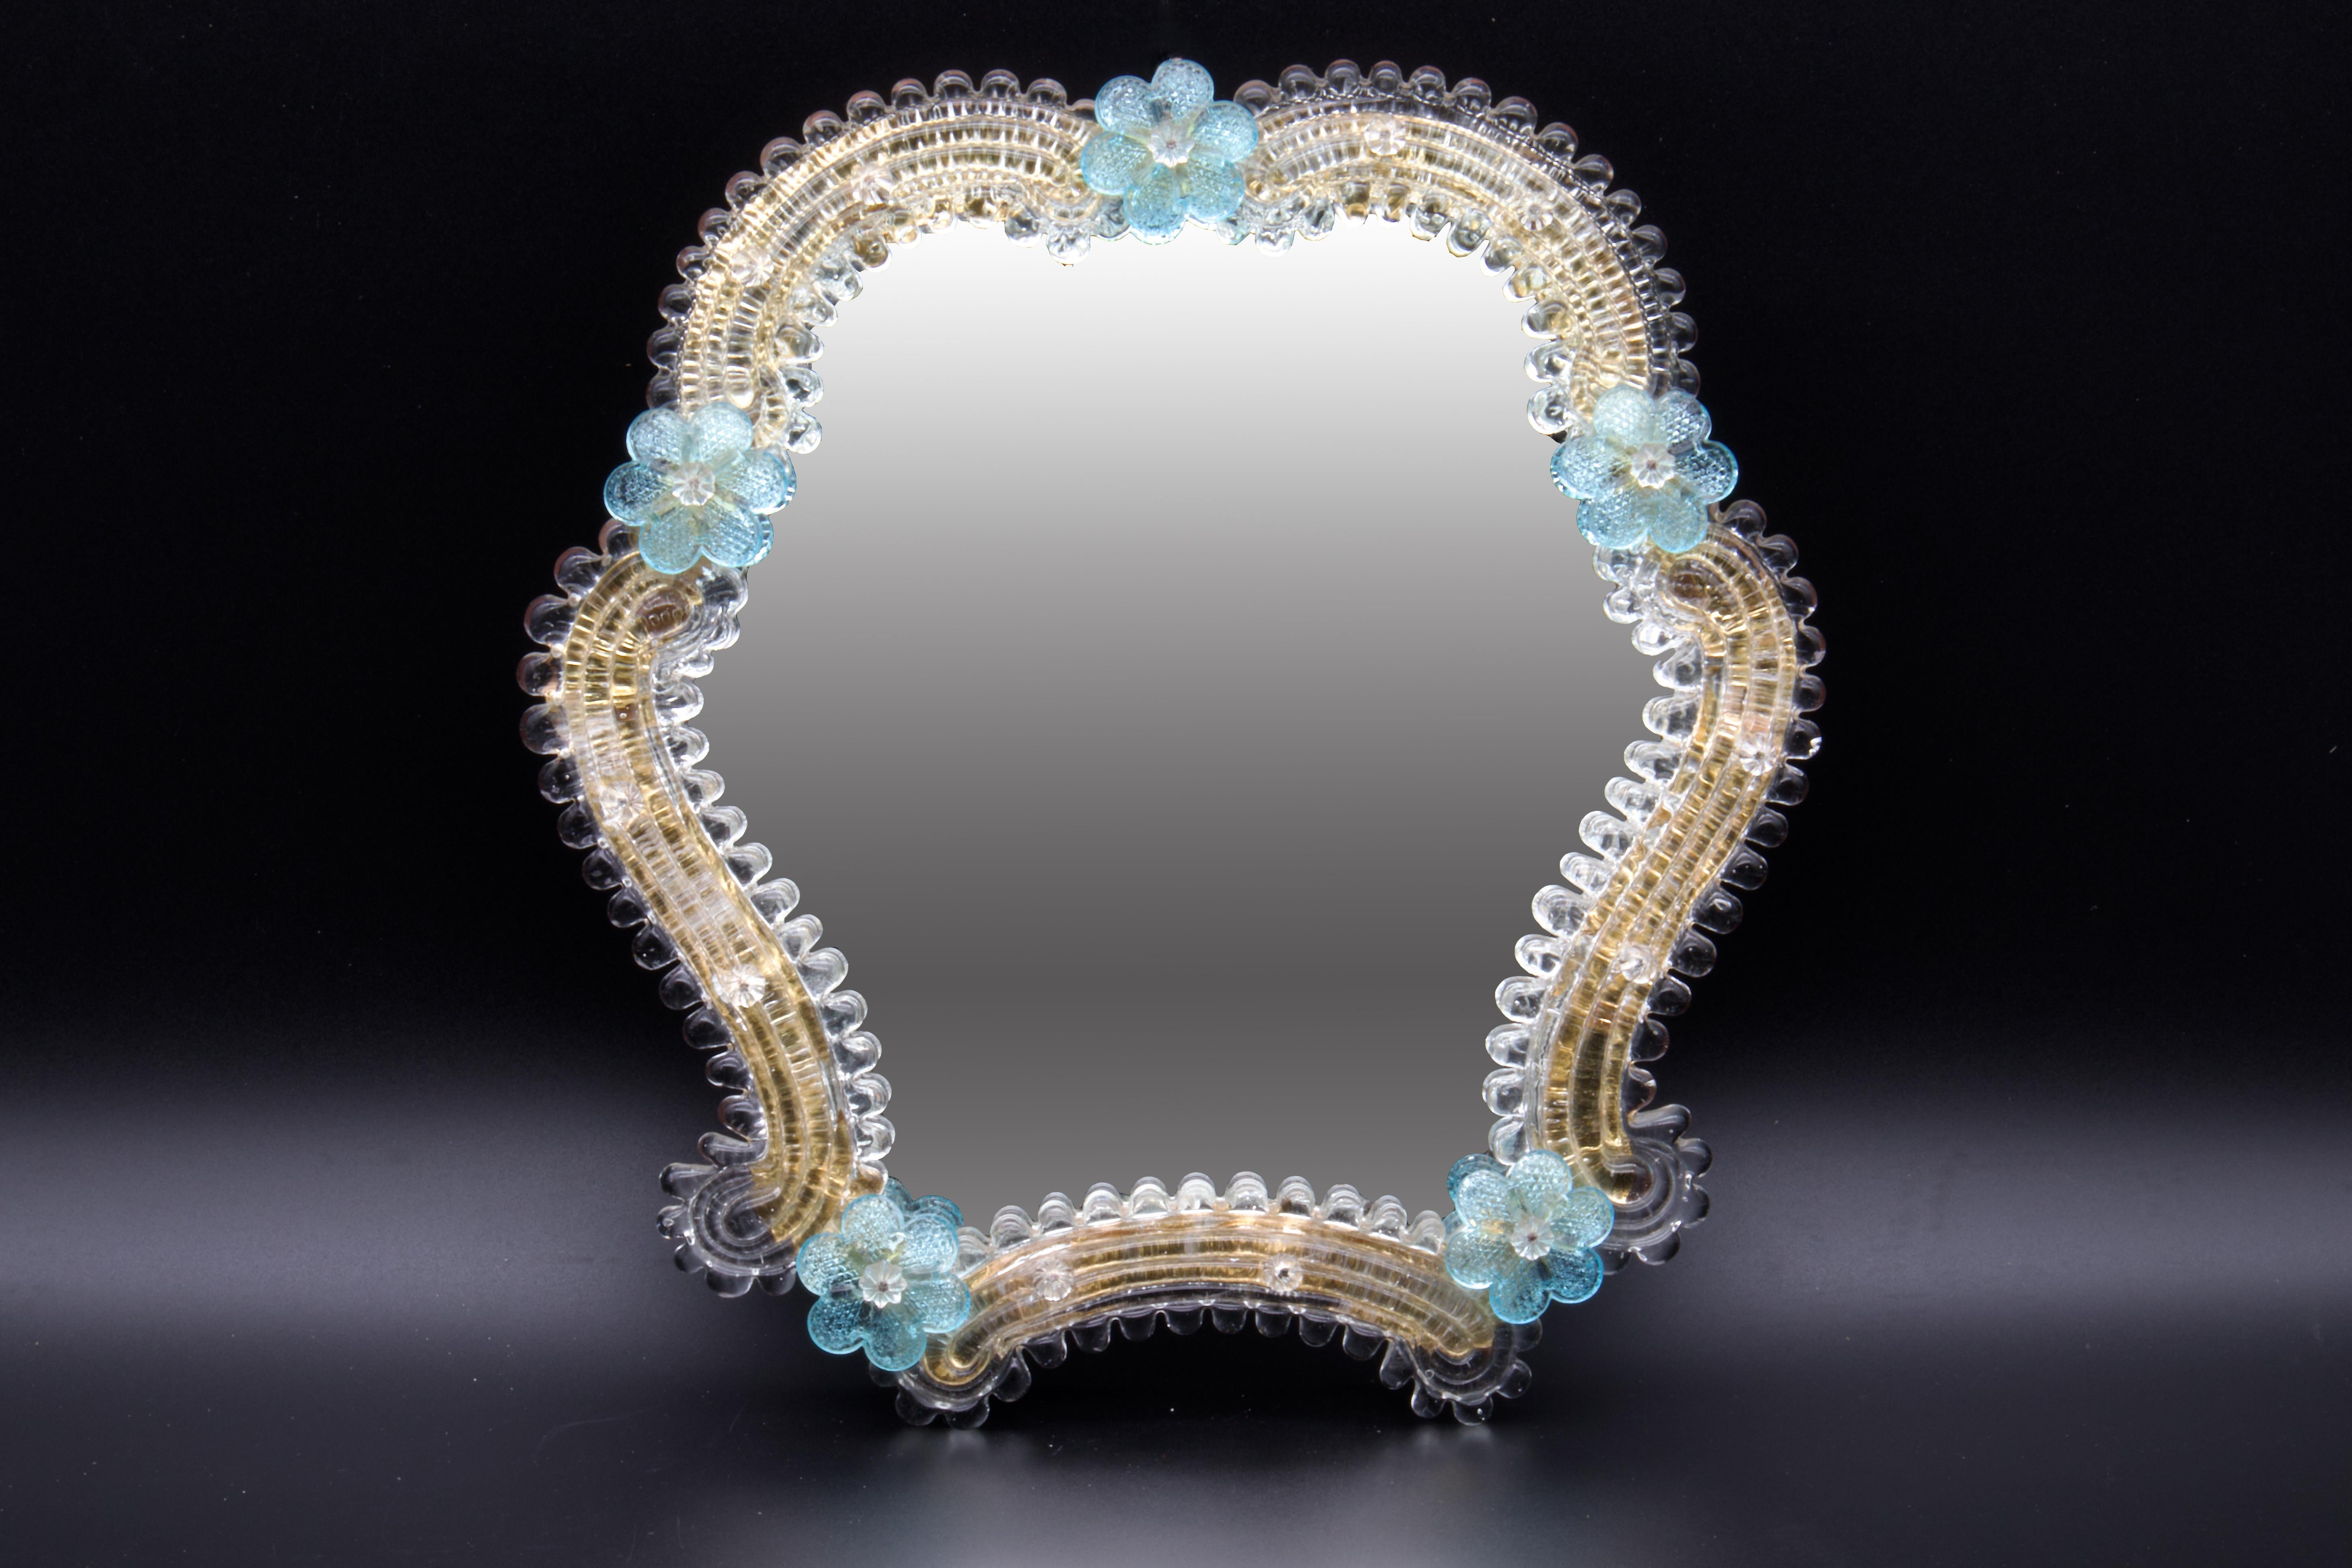 Wunderschöner Spiegel aus Murano-Glas